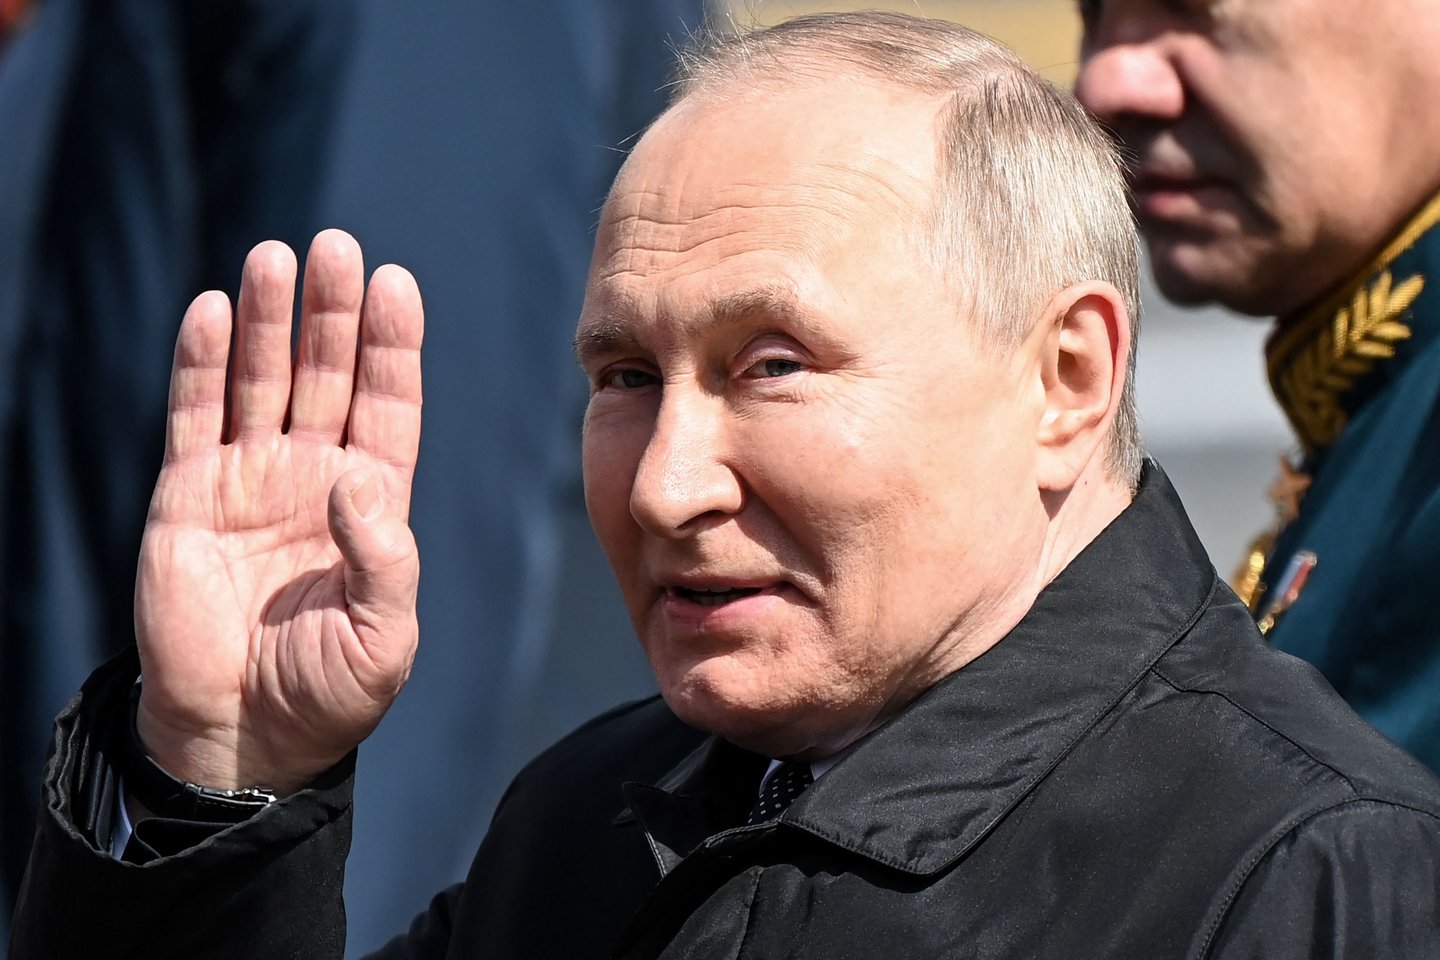 Kyla vis daugiau įtarimų dėl V. Putino sveikatos.<br>AFP/Scanpix nuotr.